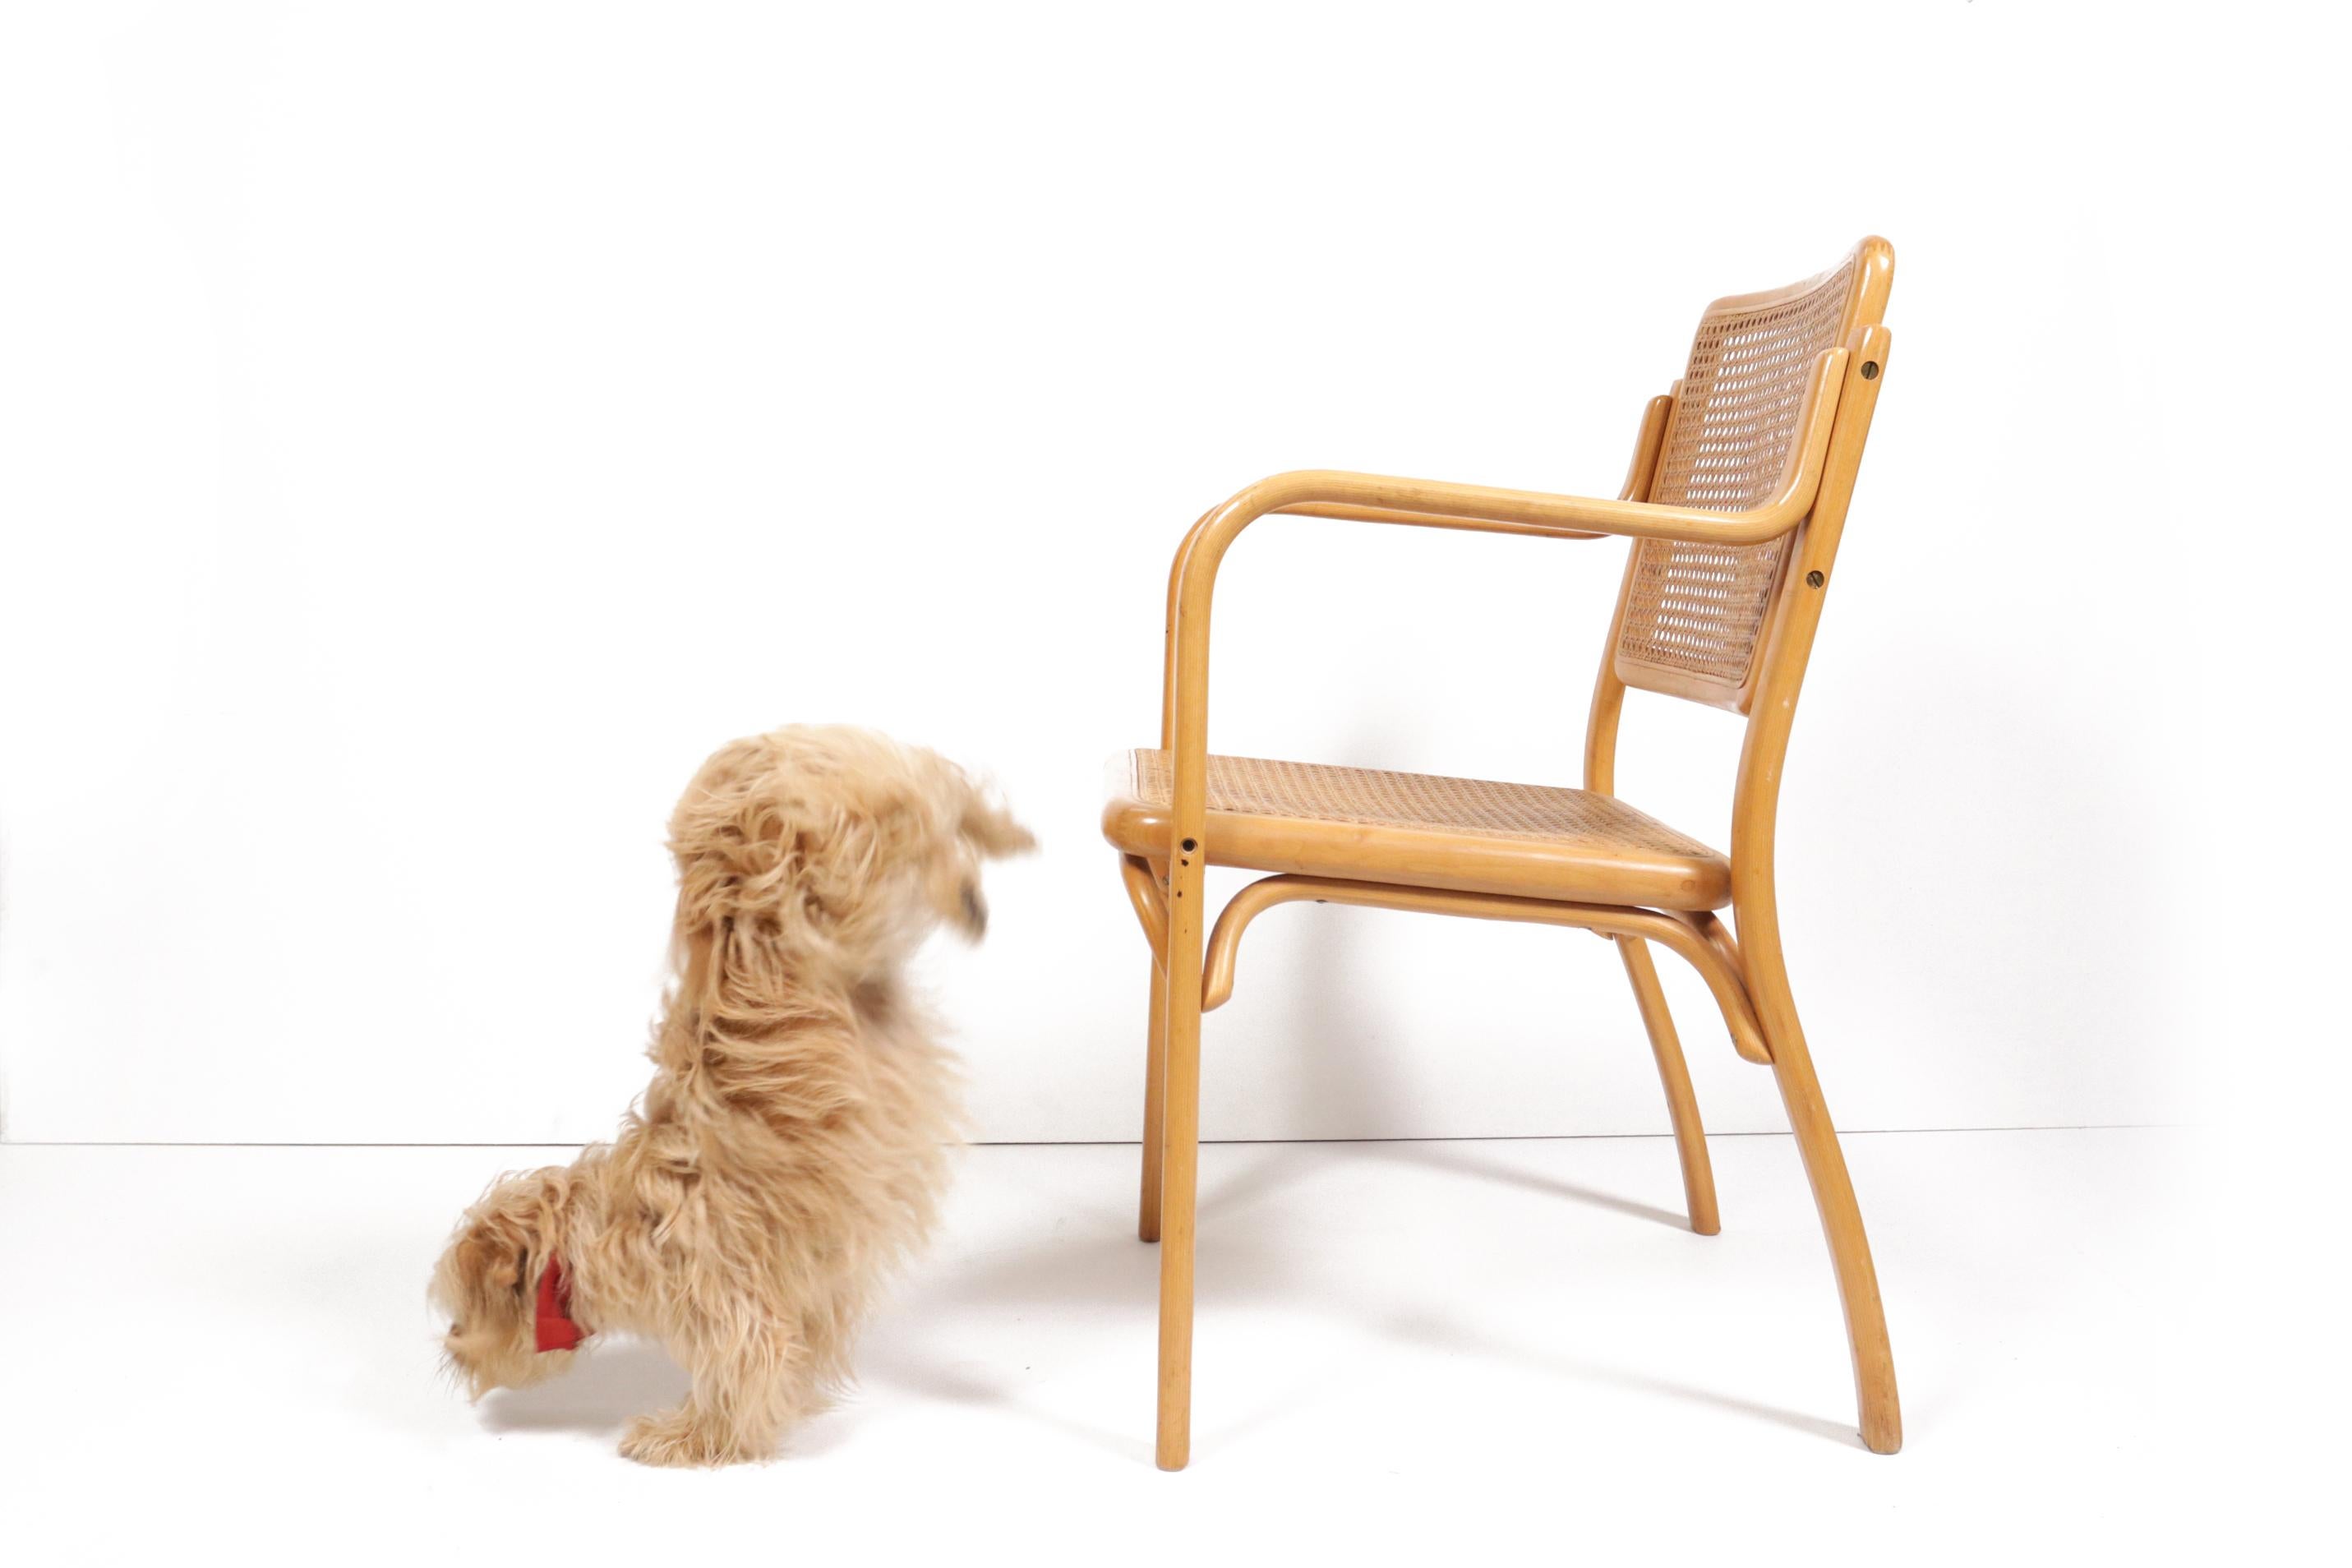 Deux rares fauteuils design du milieu du siècle en bois de hêtre courbé et assise et dossier en sangle.

Le fabricant date de la fin du XIXe siècle, s'appelait initialement Mundus (usine croate de meubles en bois courbé) et a été rebaptisé Thonet